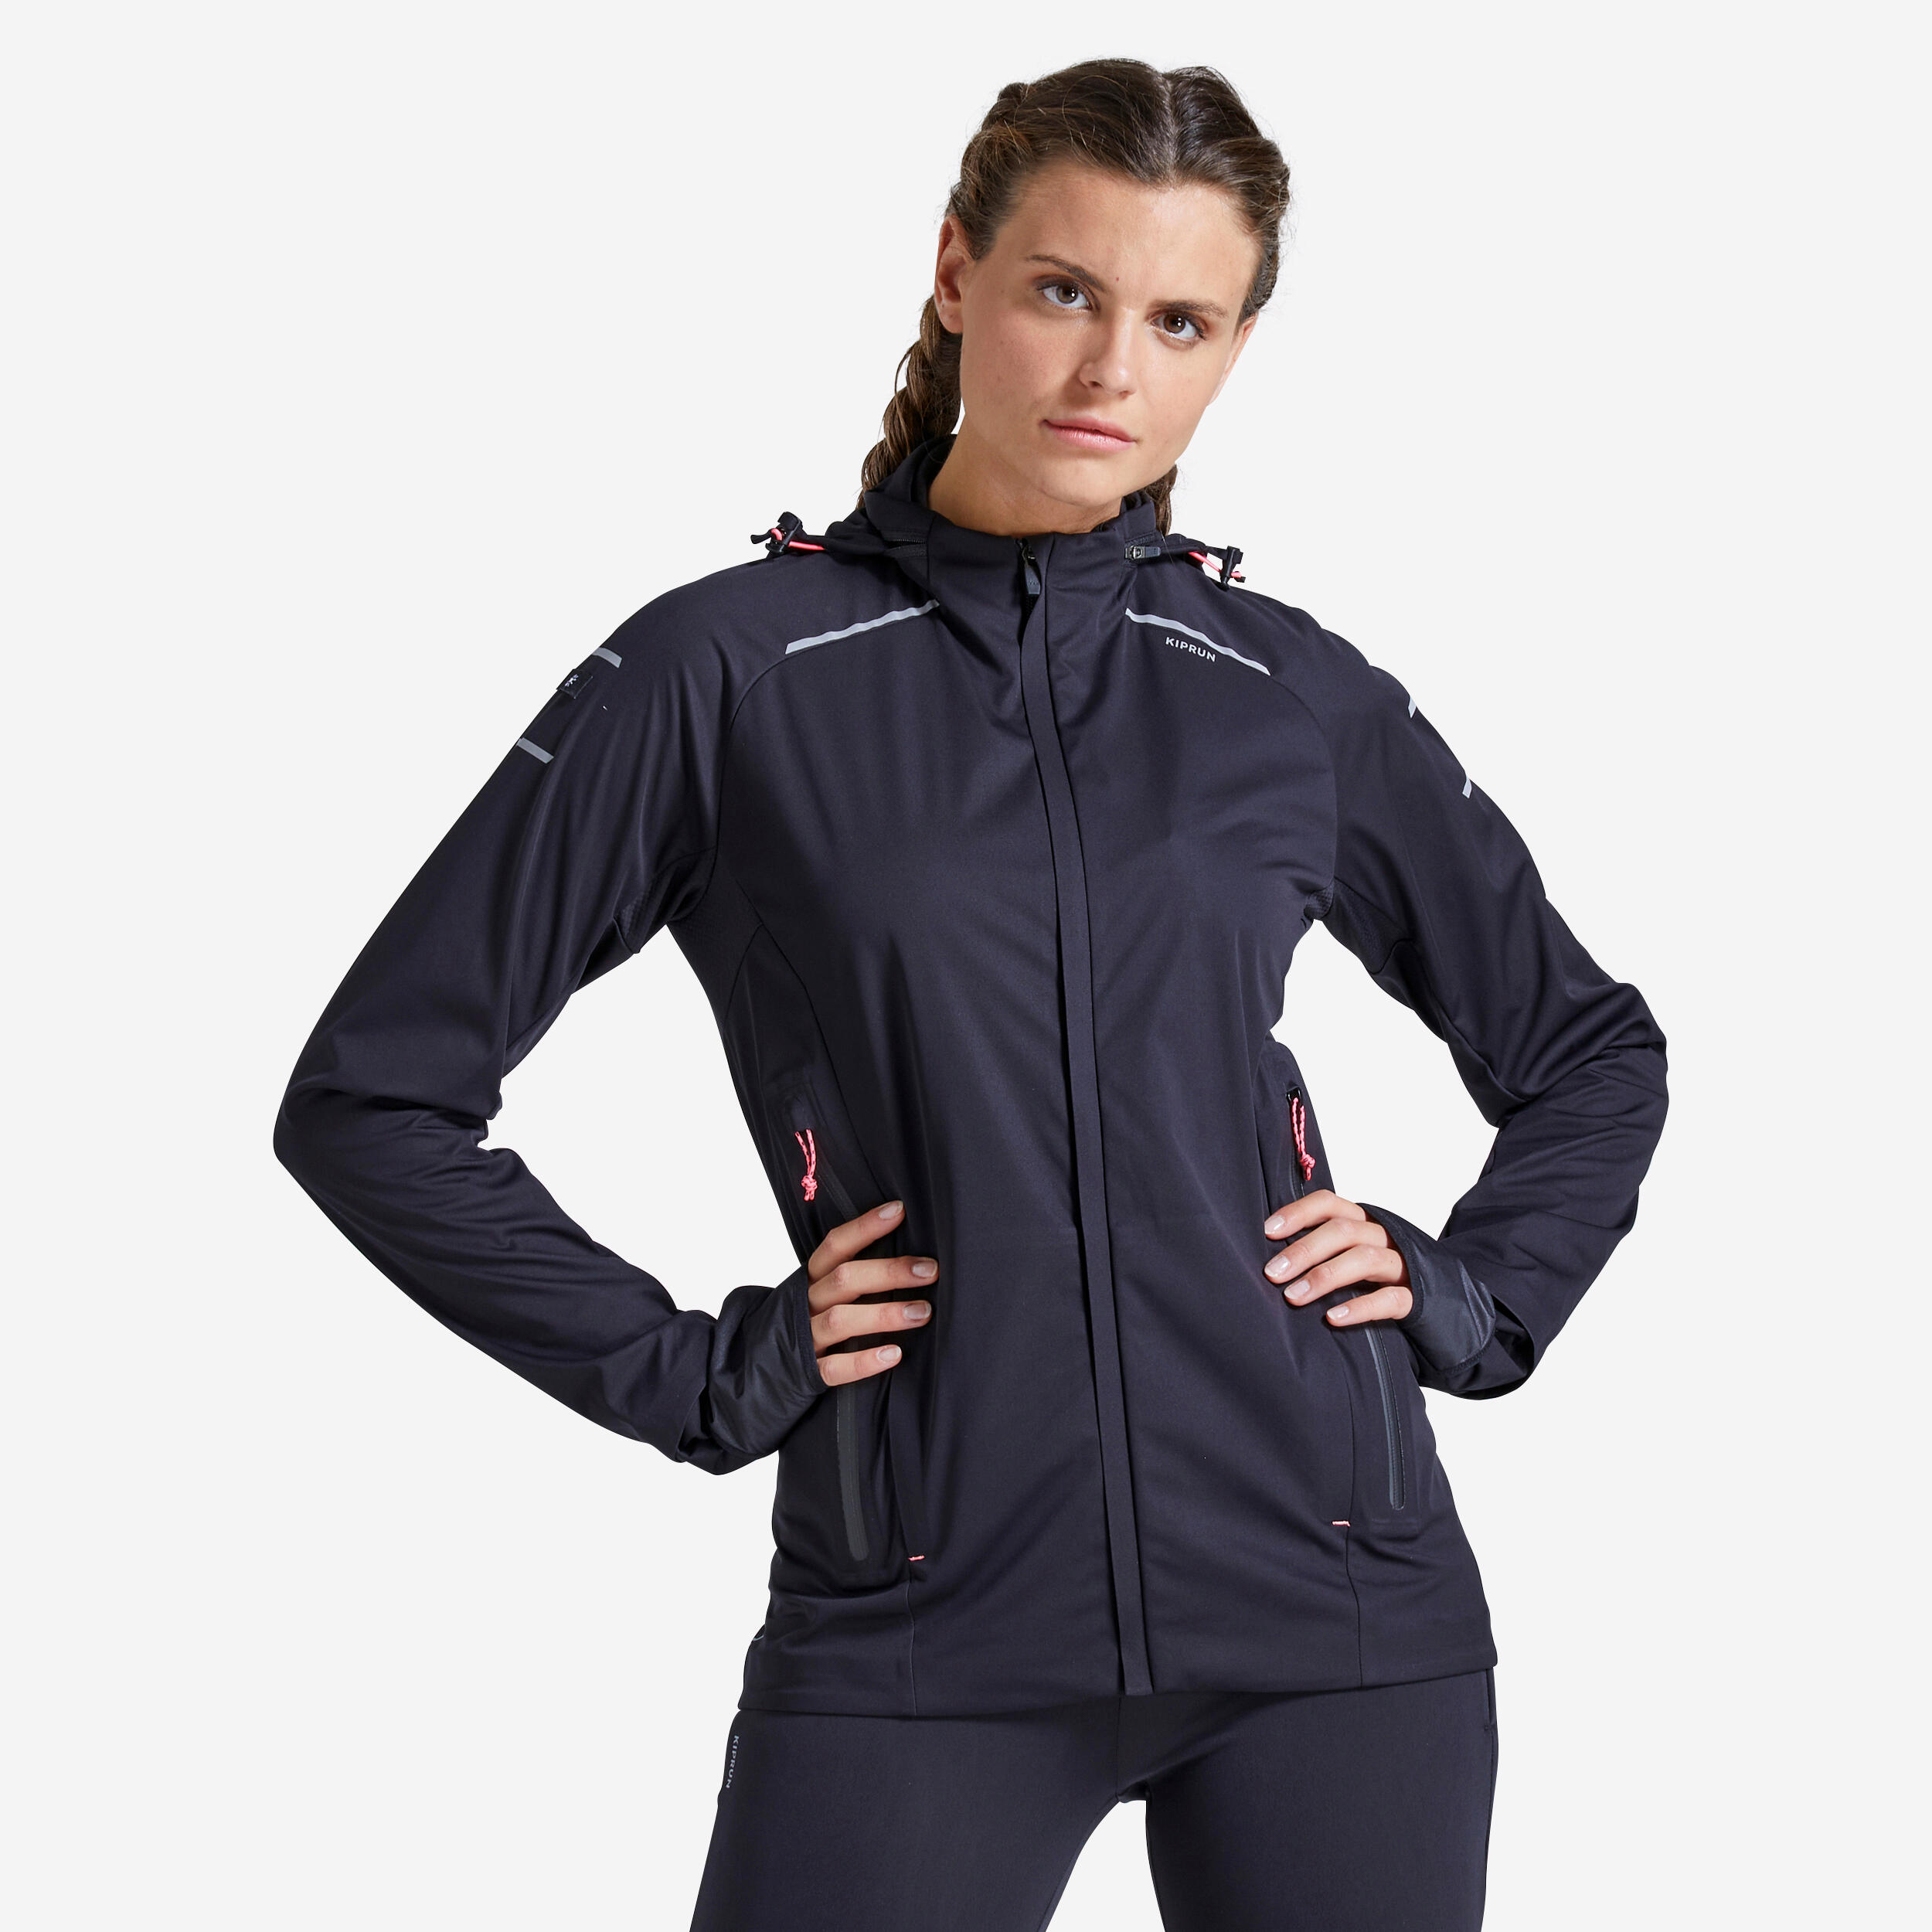 Women's Running Jacket - Warm Regul F Black - KIPRUN